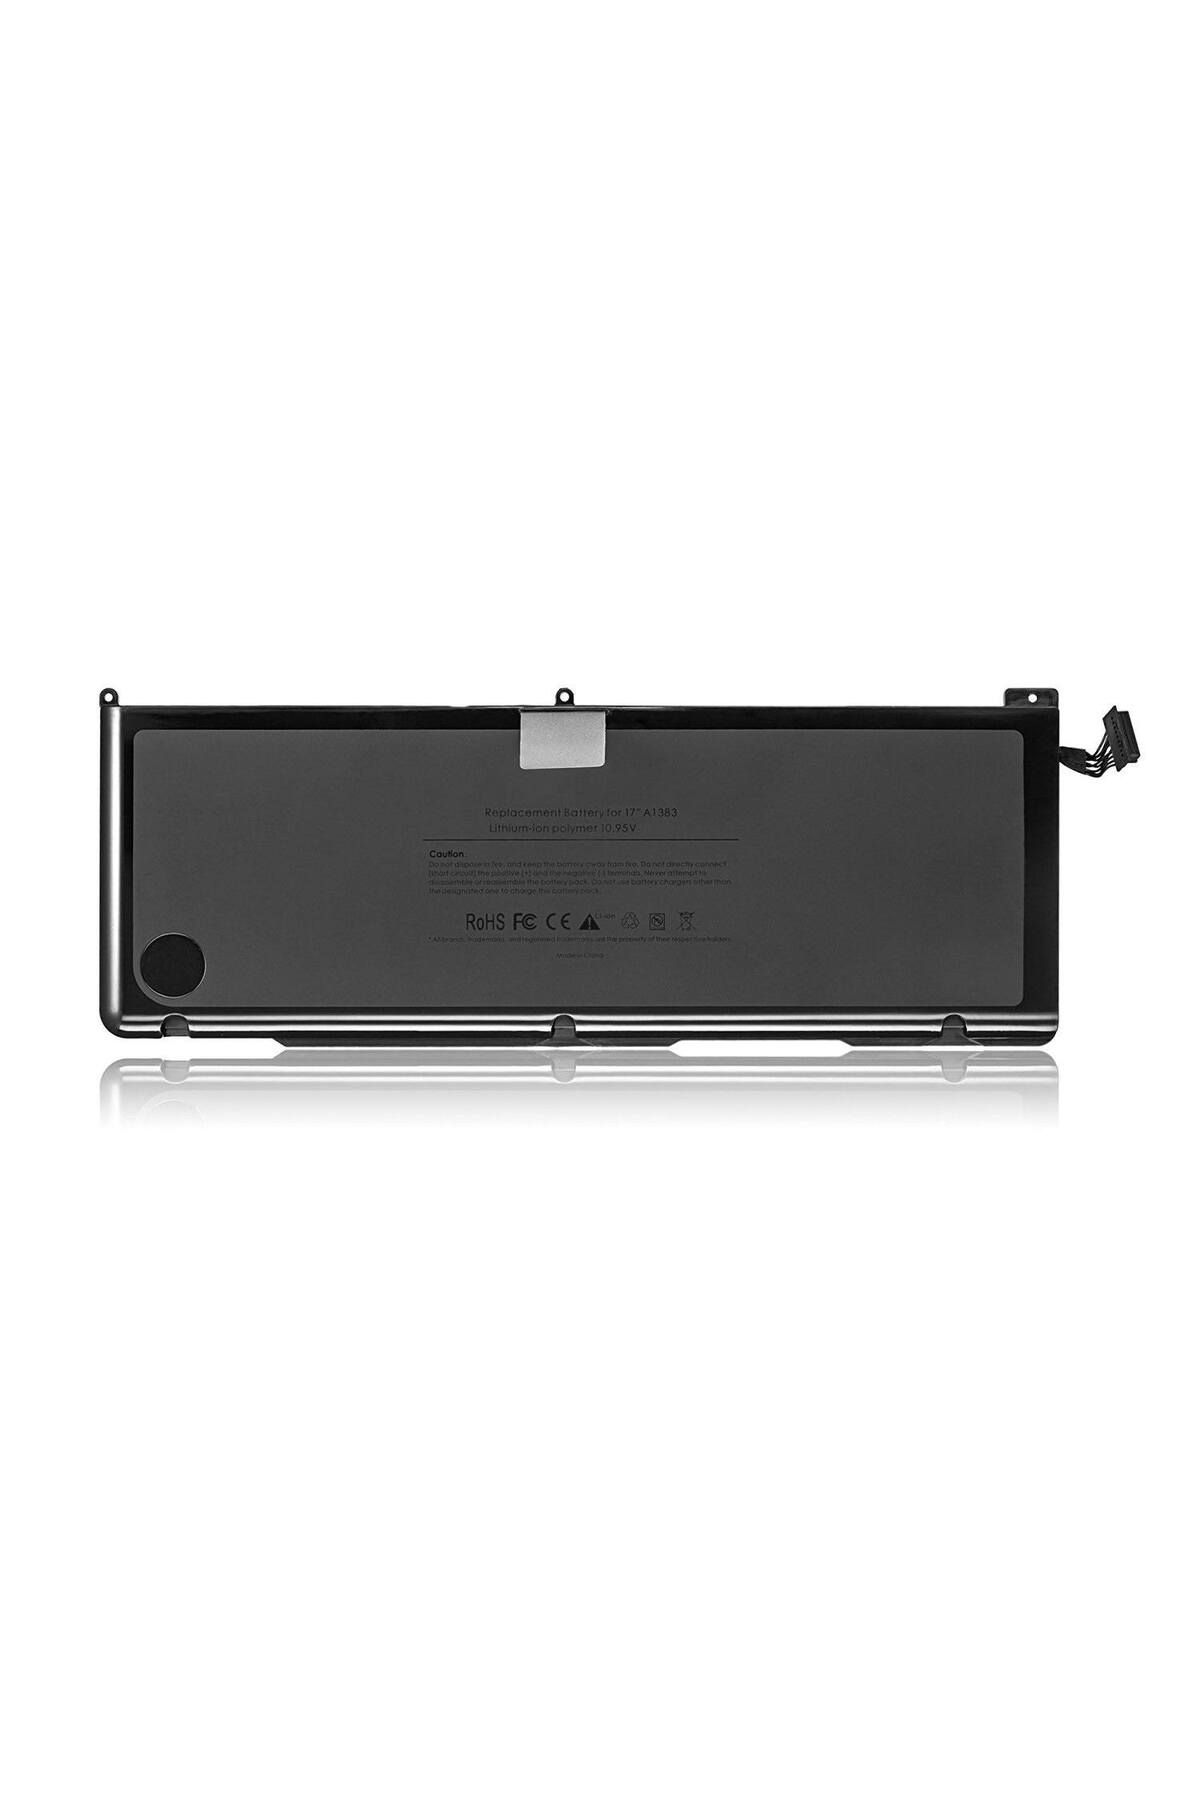 hepbidolu Apple A1383 Macbook Pro 17-inch Unibody Notebook Bataryası